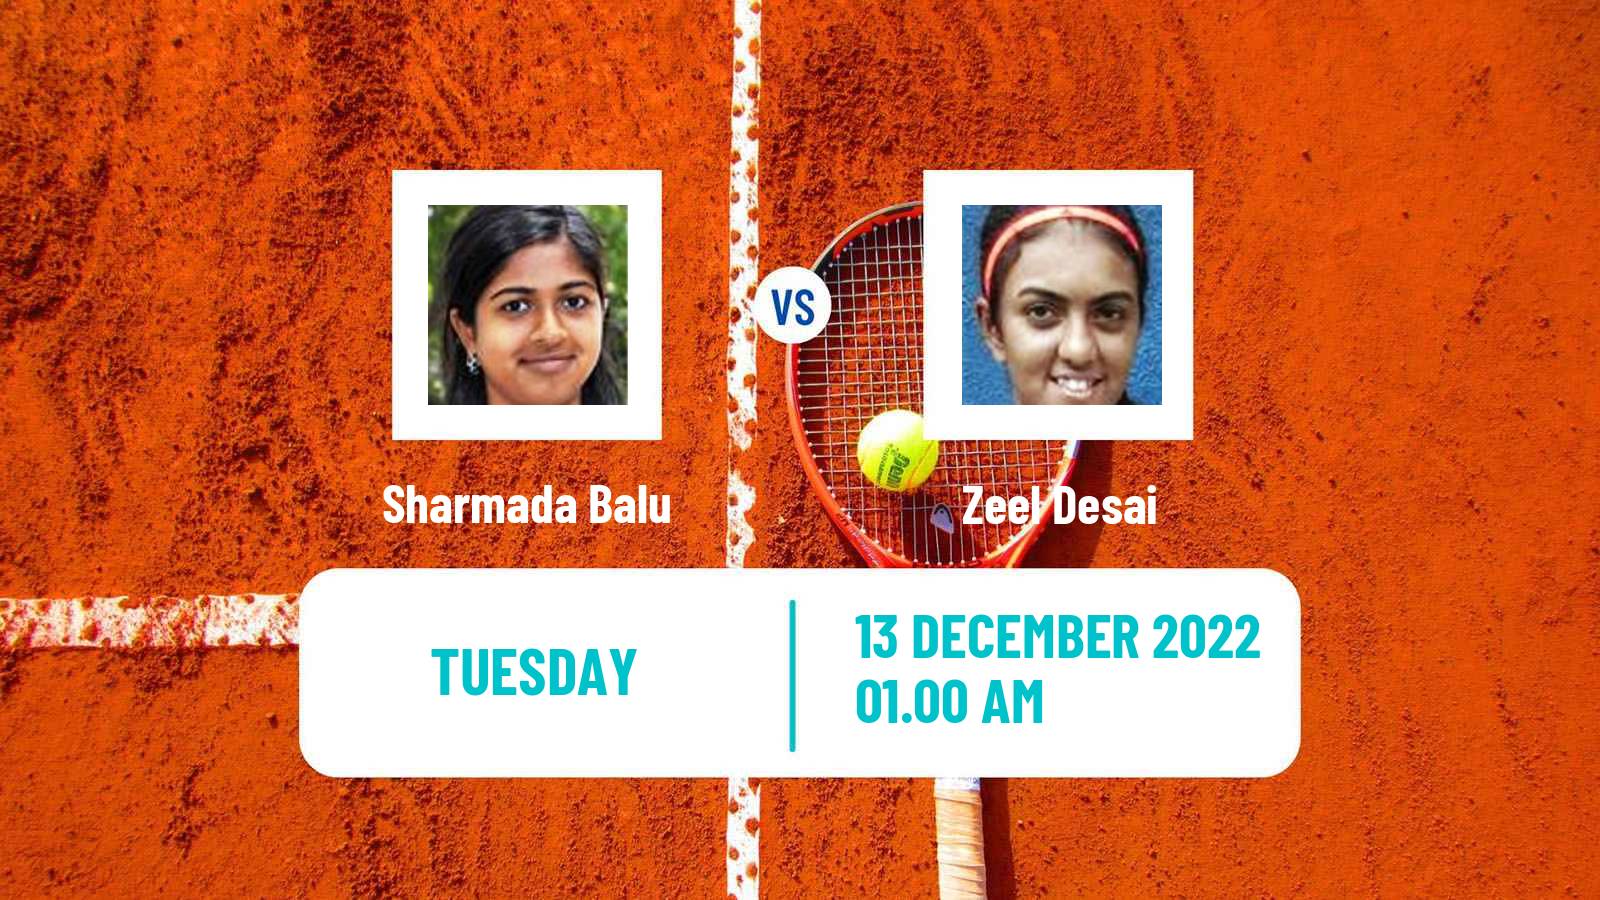 Tennis ITF Tournaments Sharmada Balu - Zeel Desai